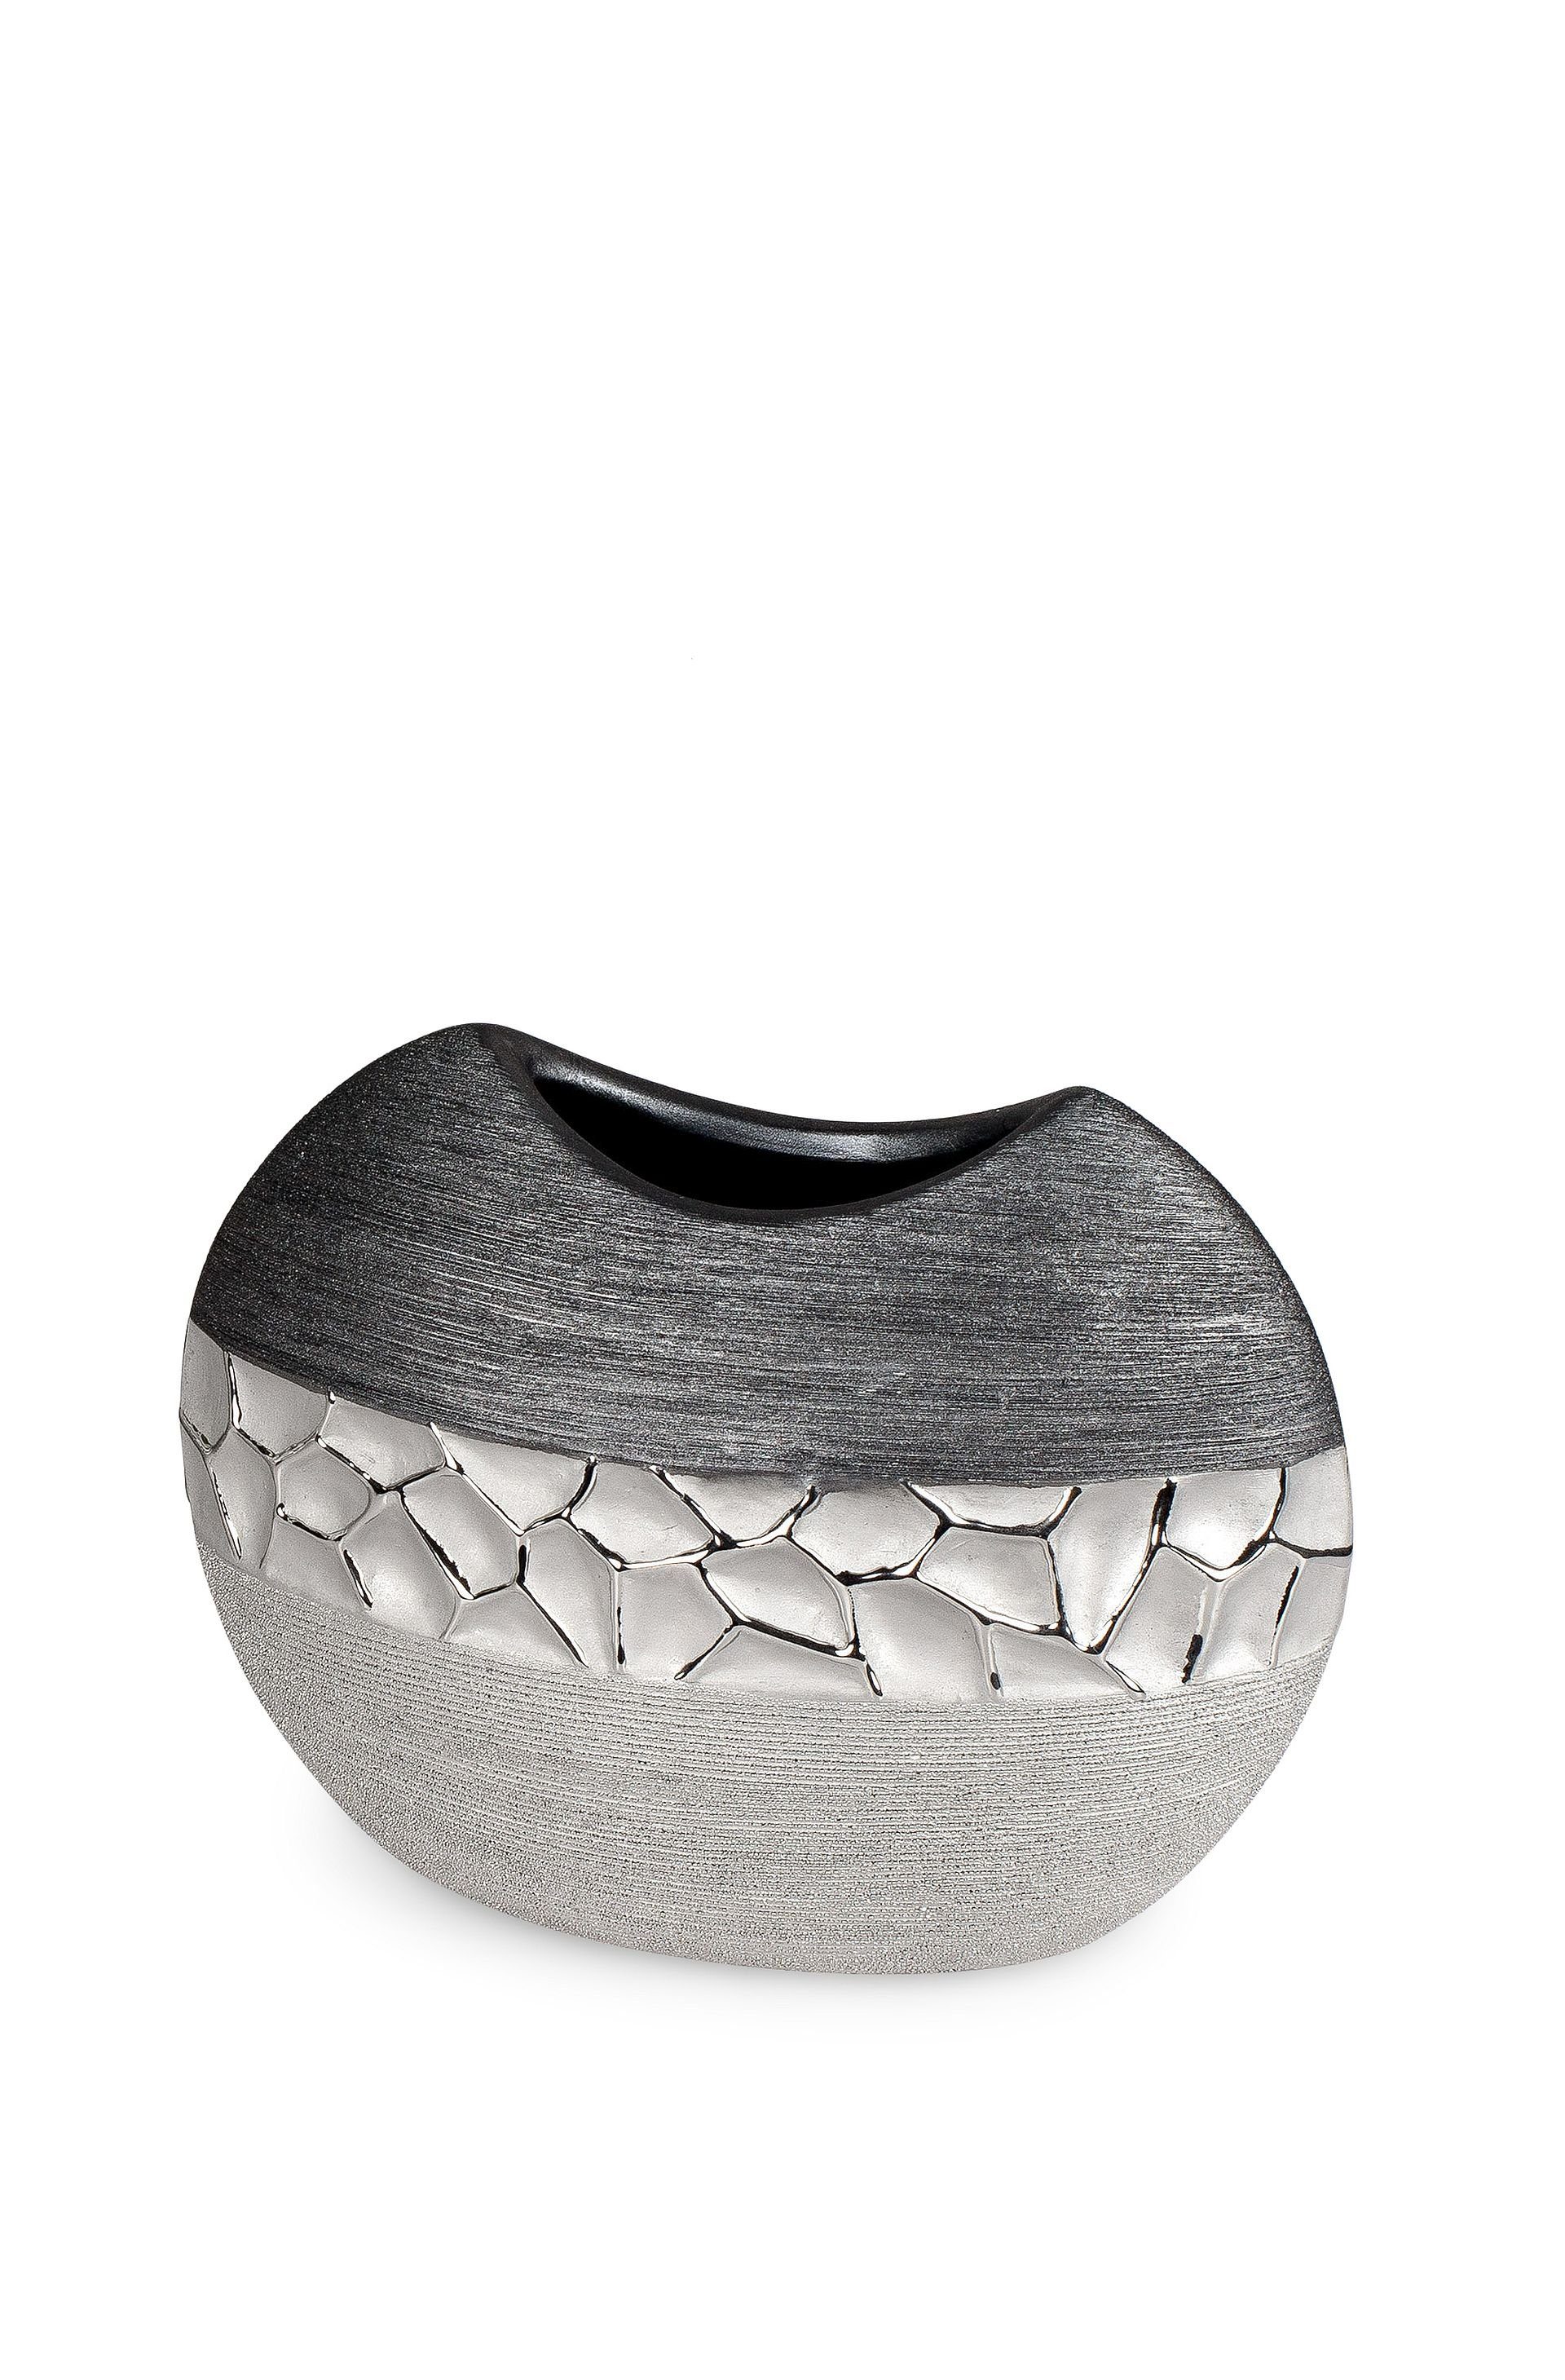 2 Small-Preis Dekovase in Tischvase aus Vase Keramik grau silber wählbar, Größen